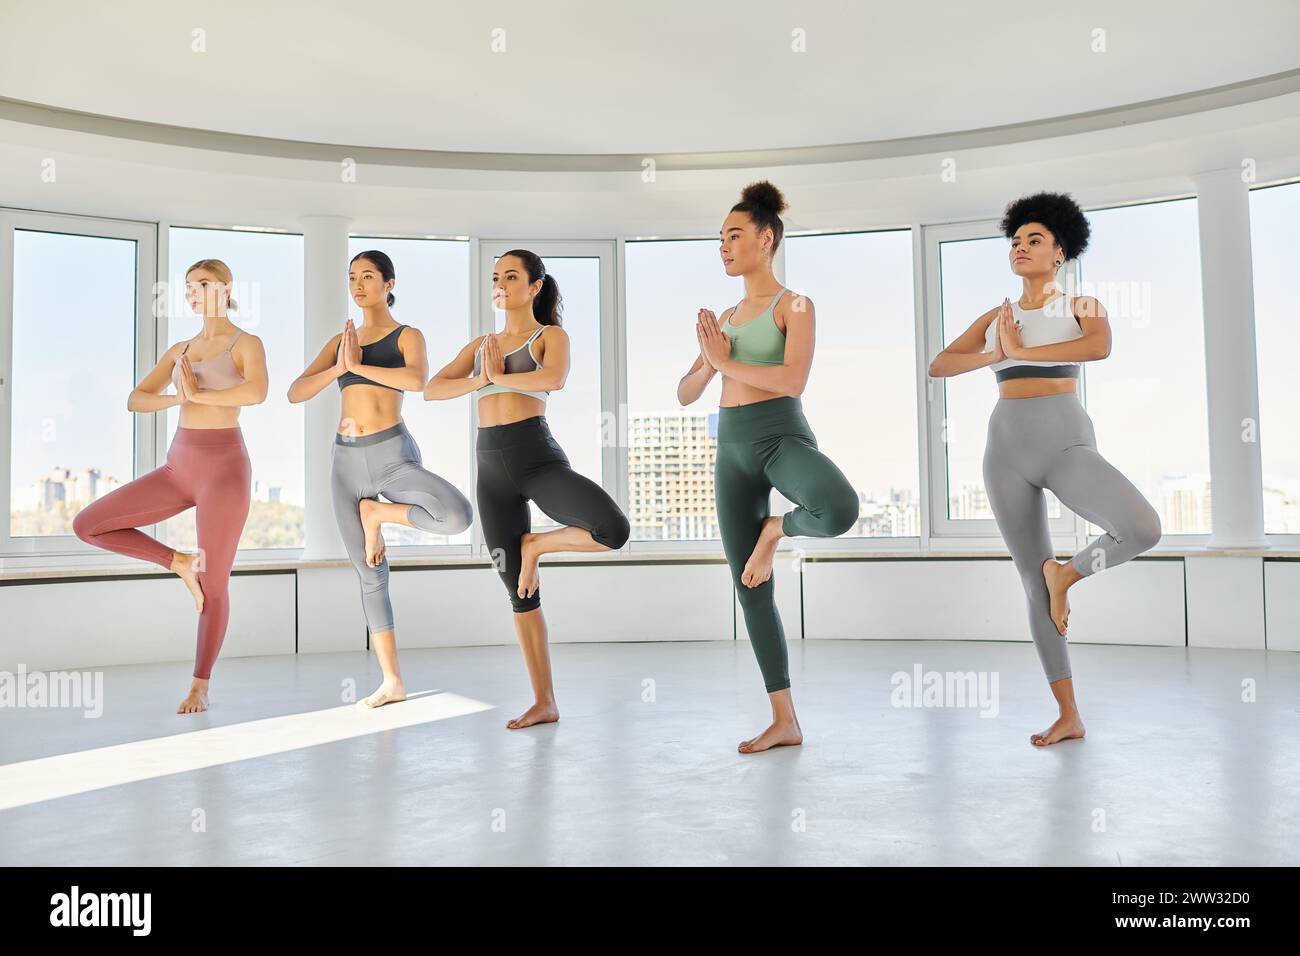 groupe de jeunes cinq femmes diverses dans les vêtements de sport pratiquant l'exercice de yoga ensemble en studio Banque D'Images